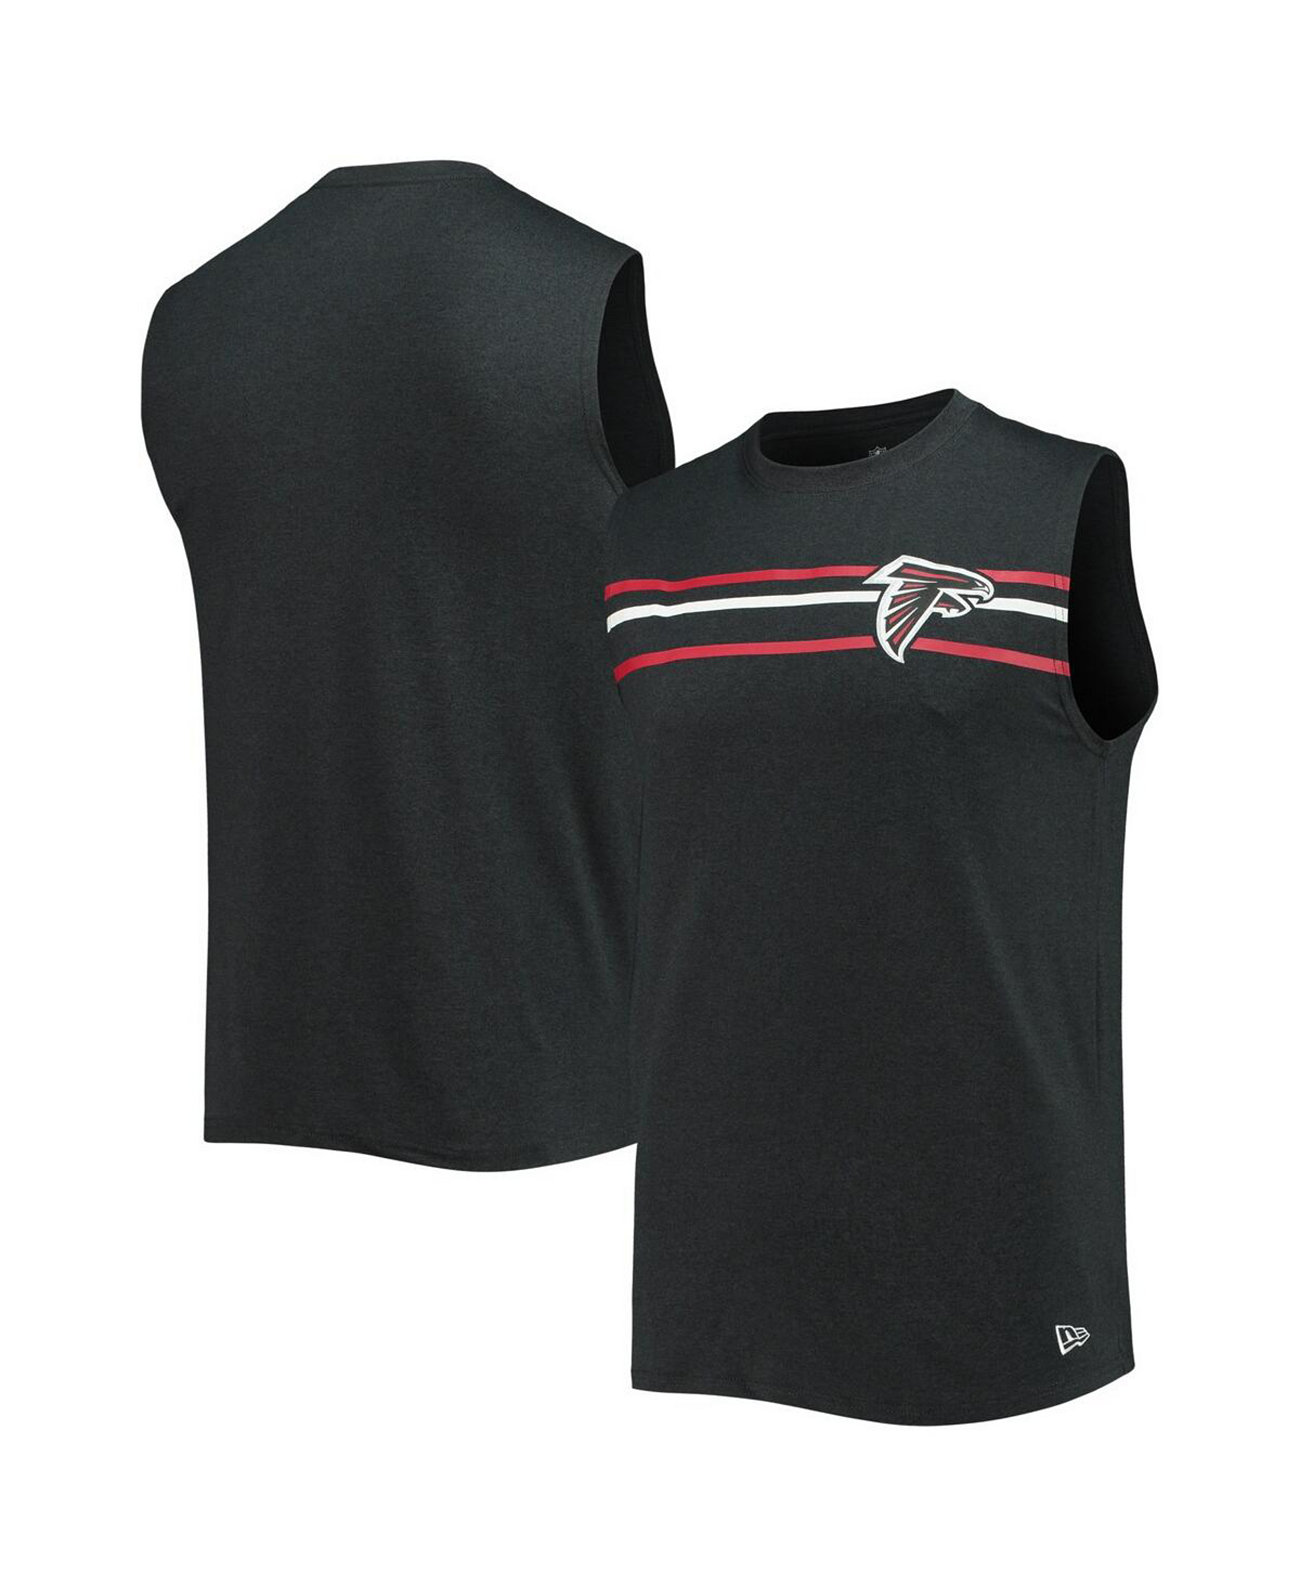 Мужская футболка без рукавов с меланжевым покрытием черного цвета Atlanta Falcons New Era